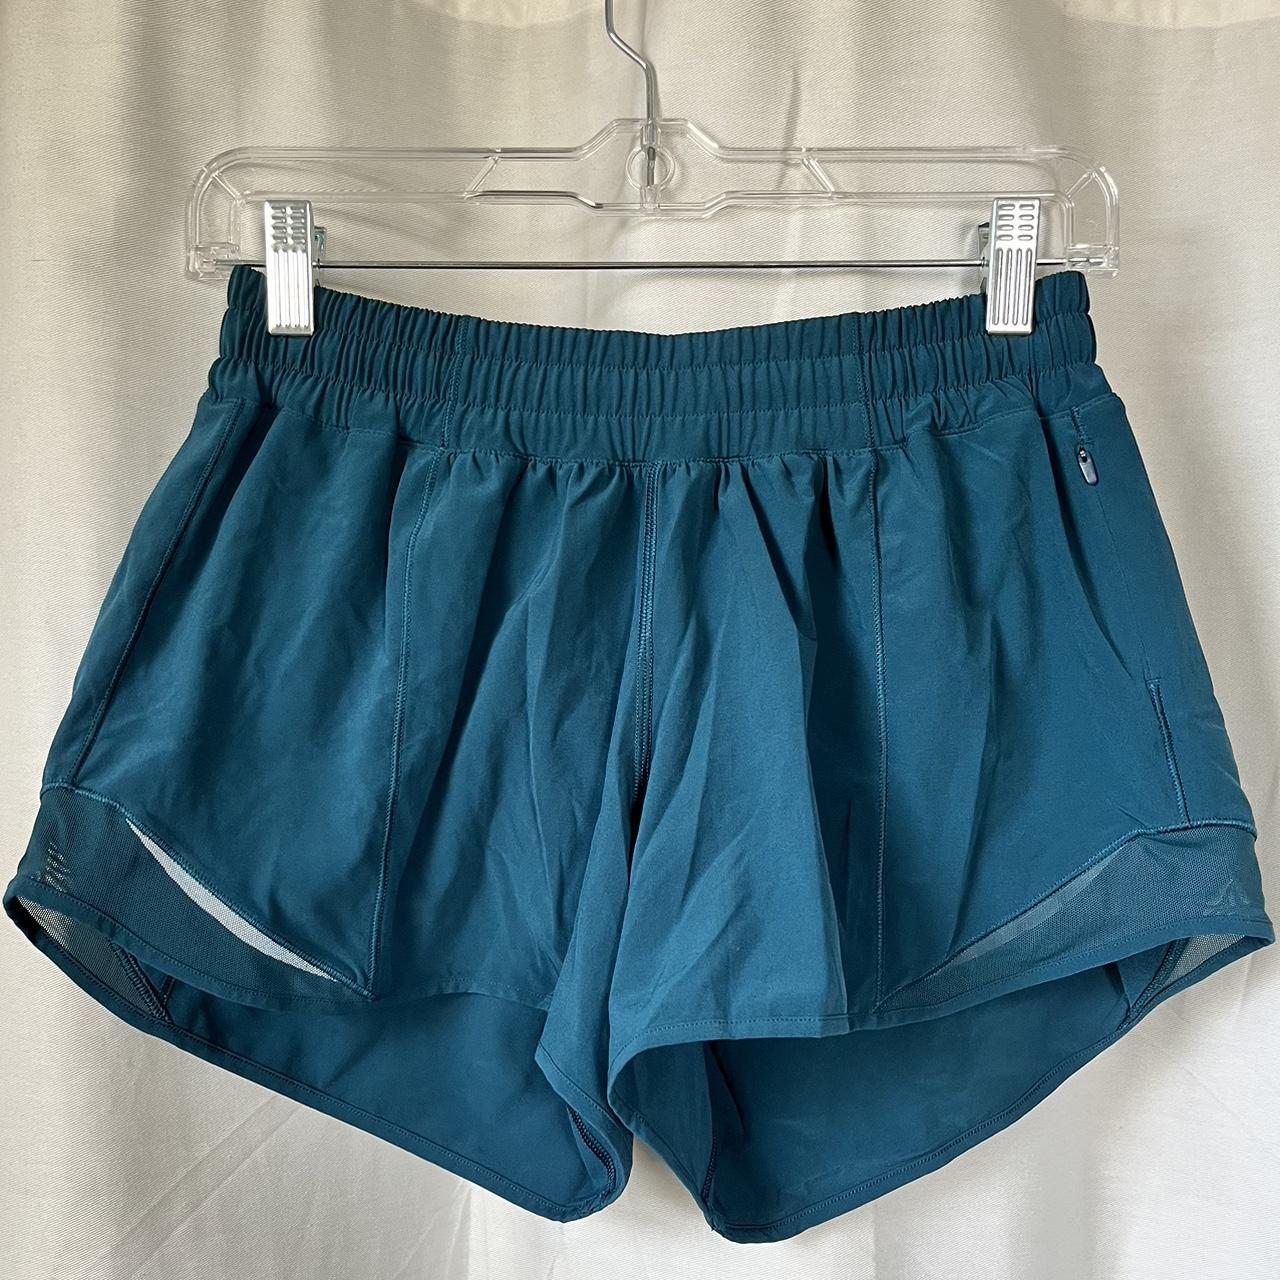 Lululemon Blue Athletic Shorts Size: Says 6 (I’m a... - Depop